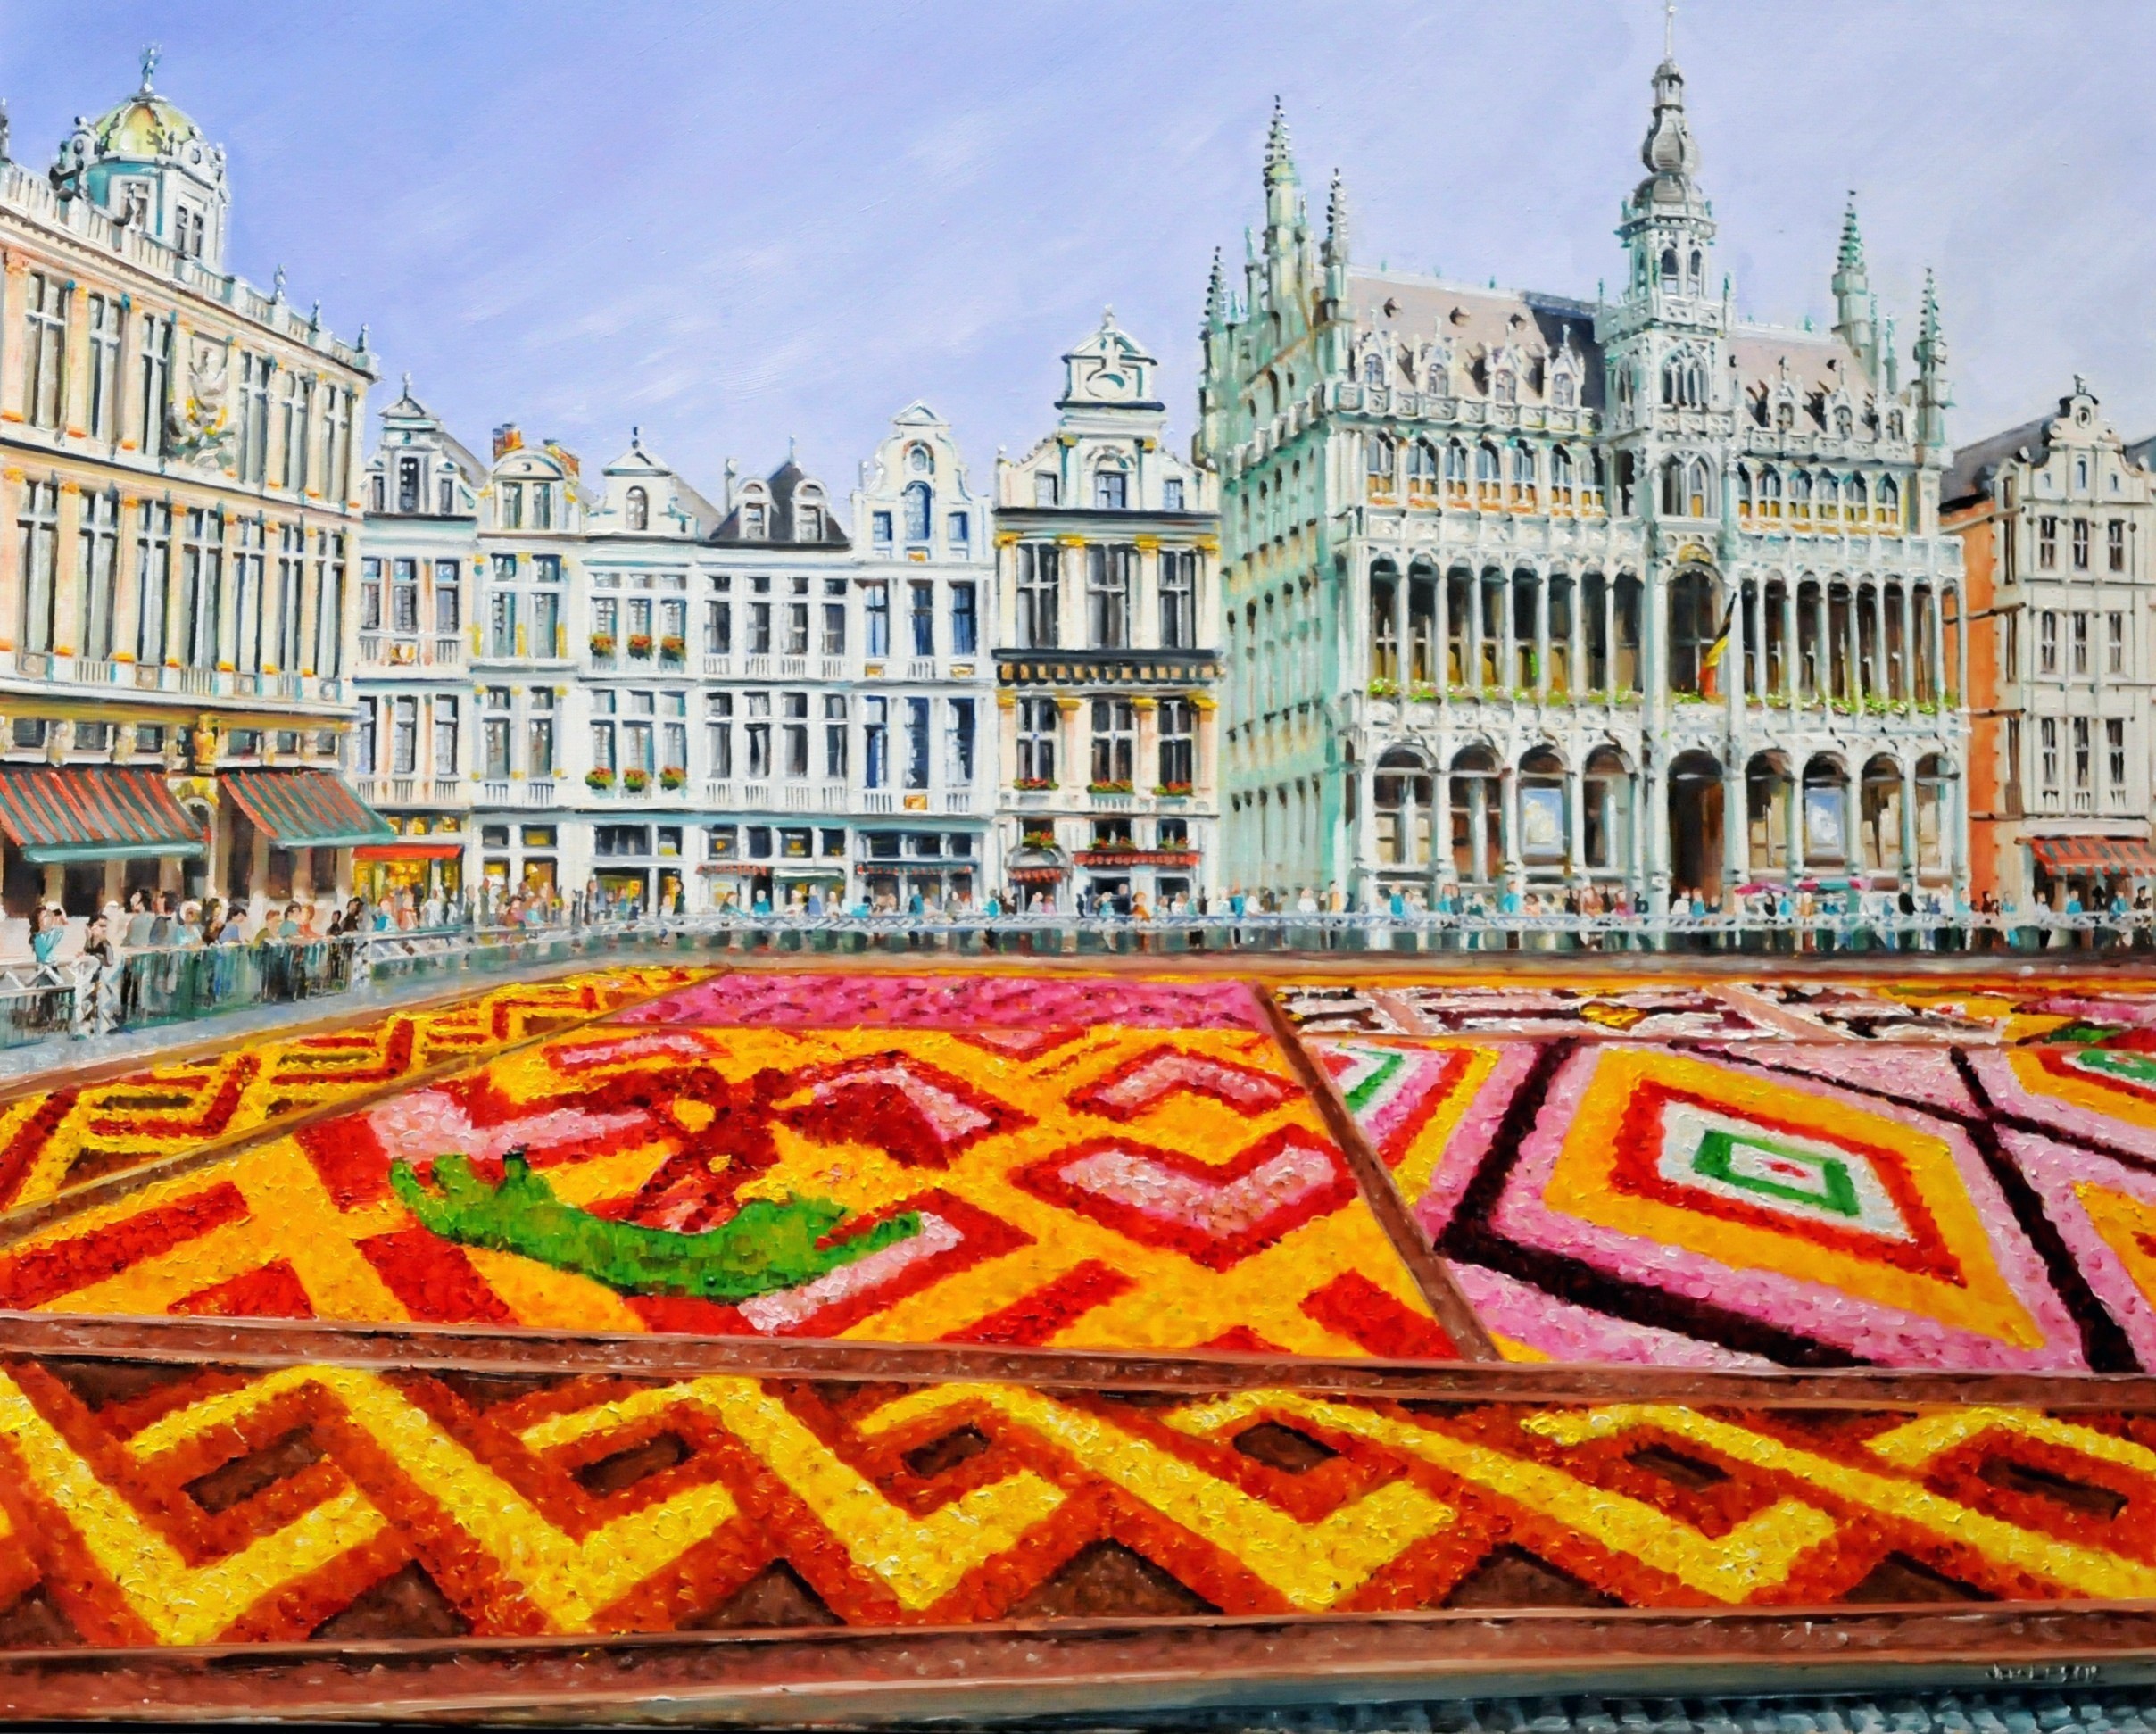 Bloementapijt op de Grote Markt Brussel, België | Olieverf op linnen | Jaar: 2012 | Afmetingen: 80x100cm